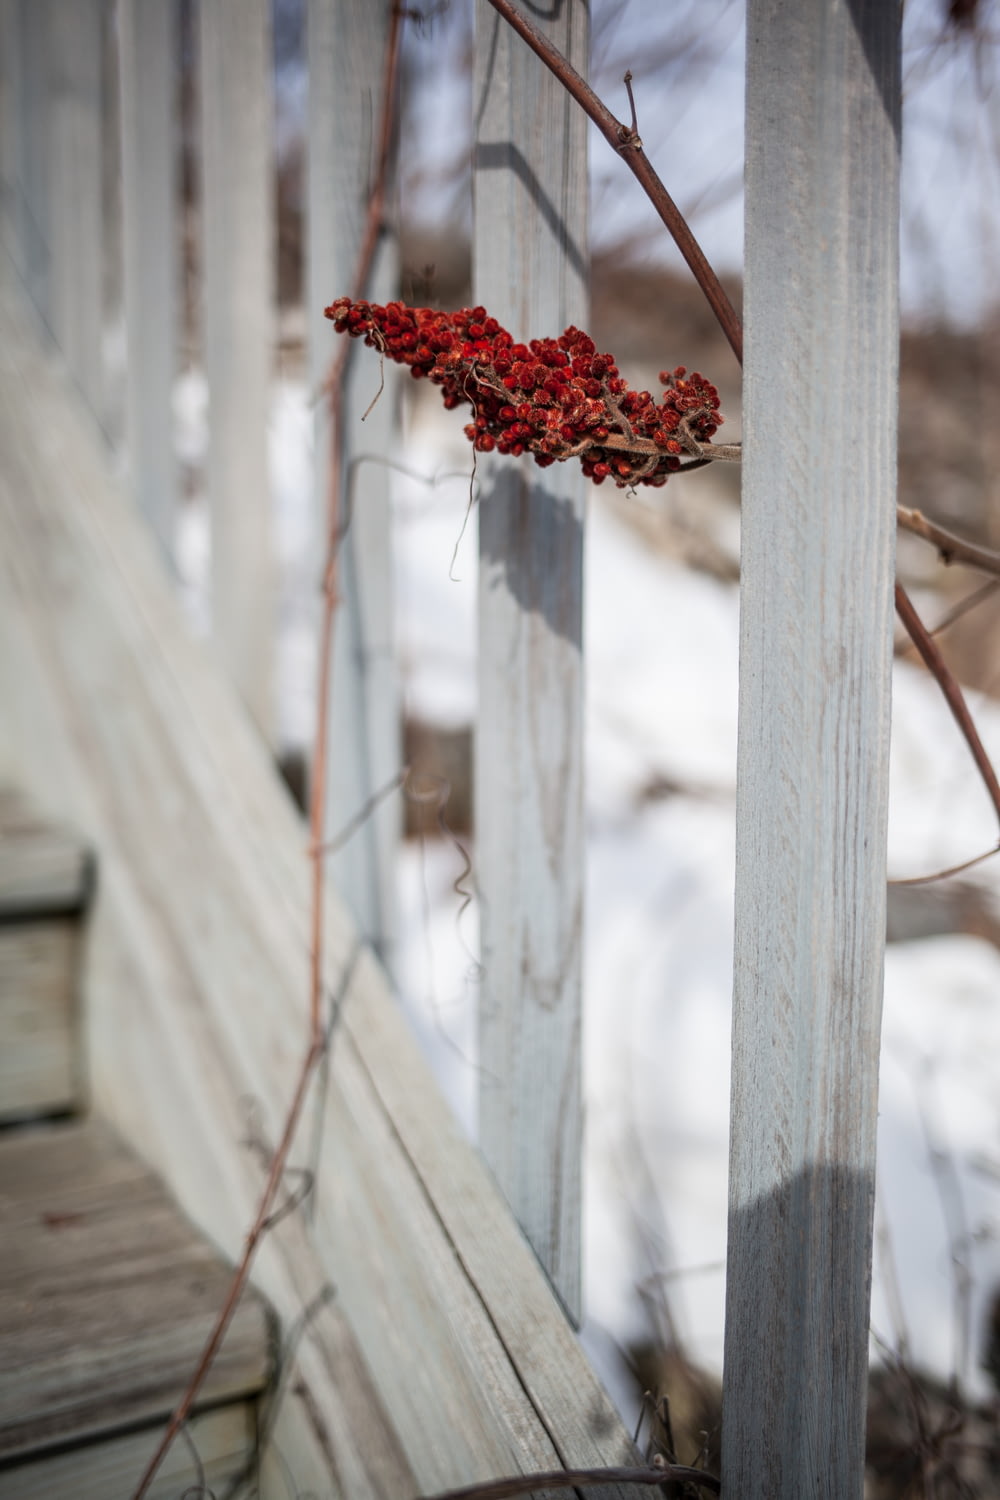 fiore rosso su staccionata di legno bianca